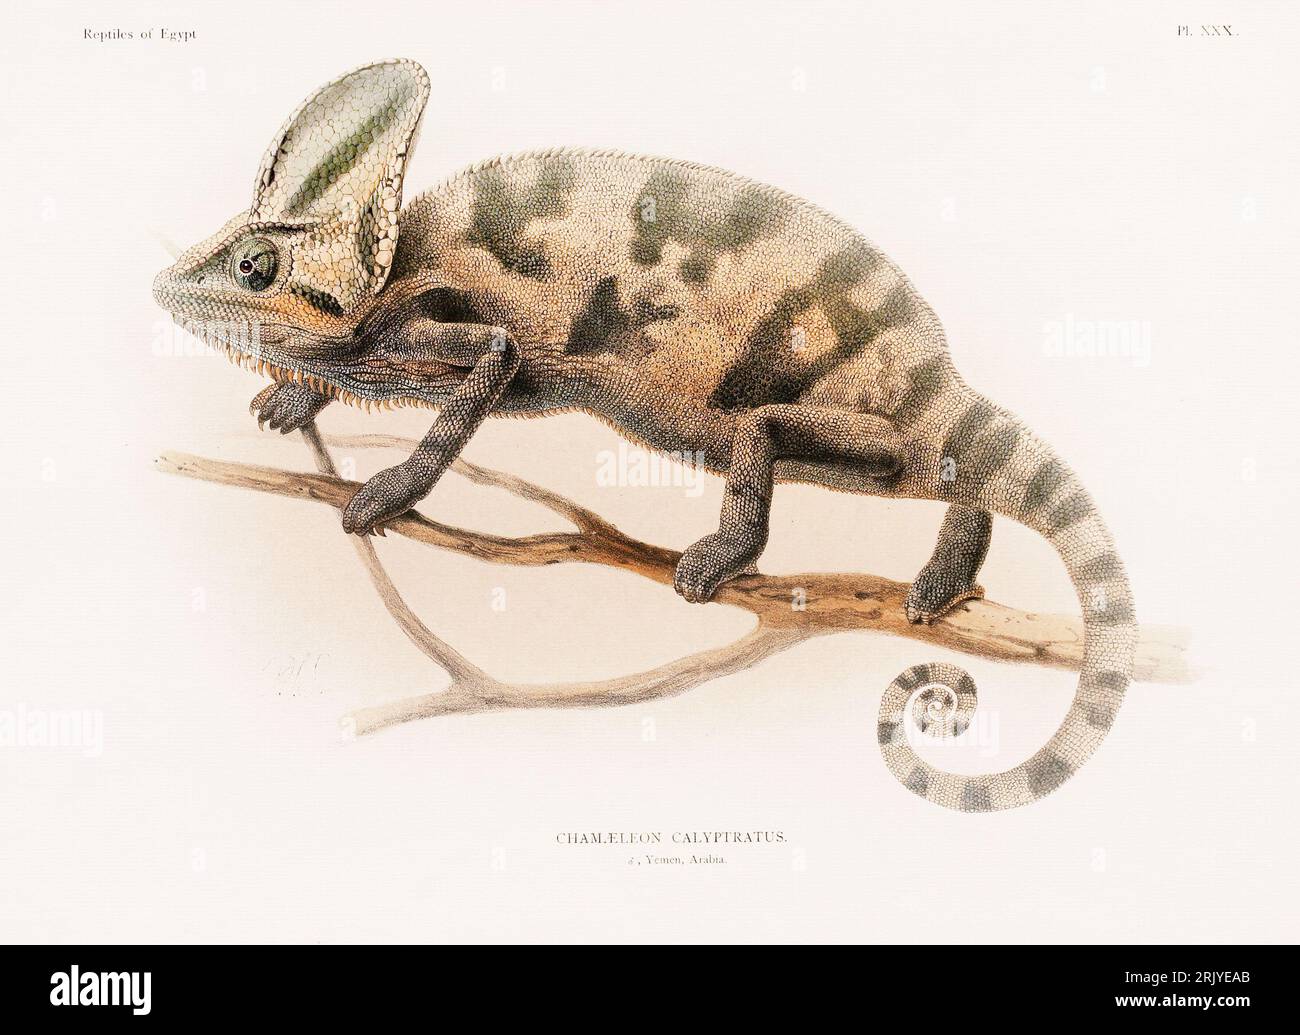 Wissenschaftliche Illustration aus einem Buch aus dem späten 19. Jahrhundert, das Reptilien zeigt und sich speziell mit der nordafrikanischen Zoologie beschäftigt. Stockfoto